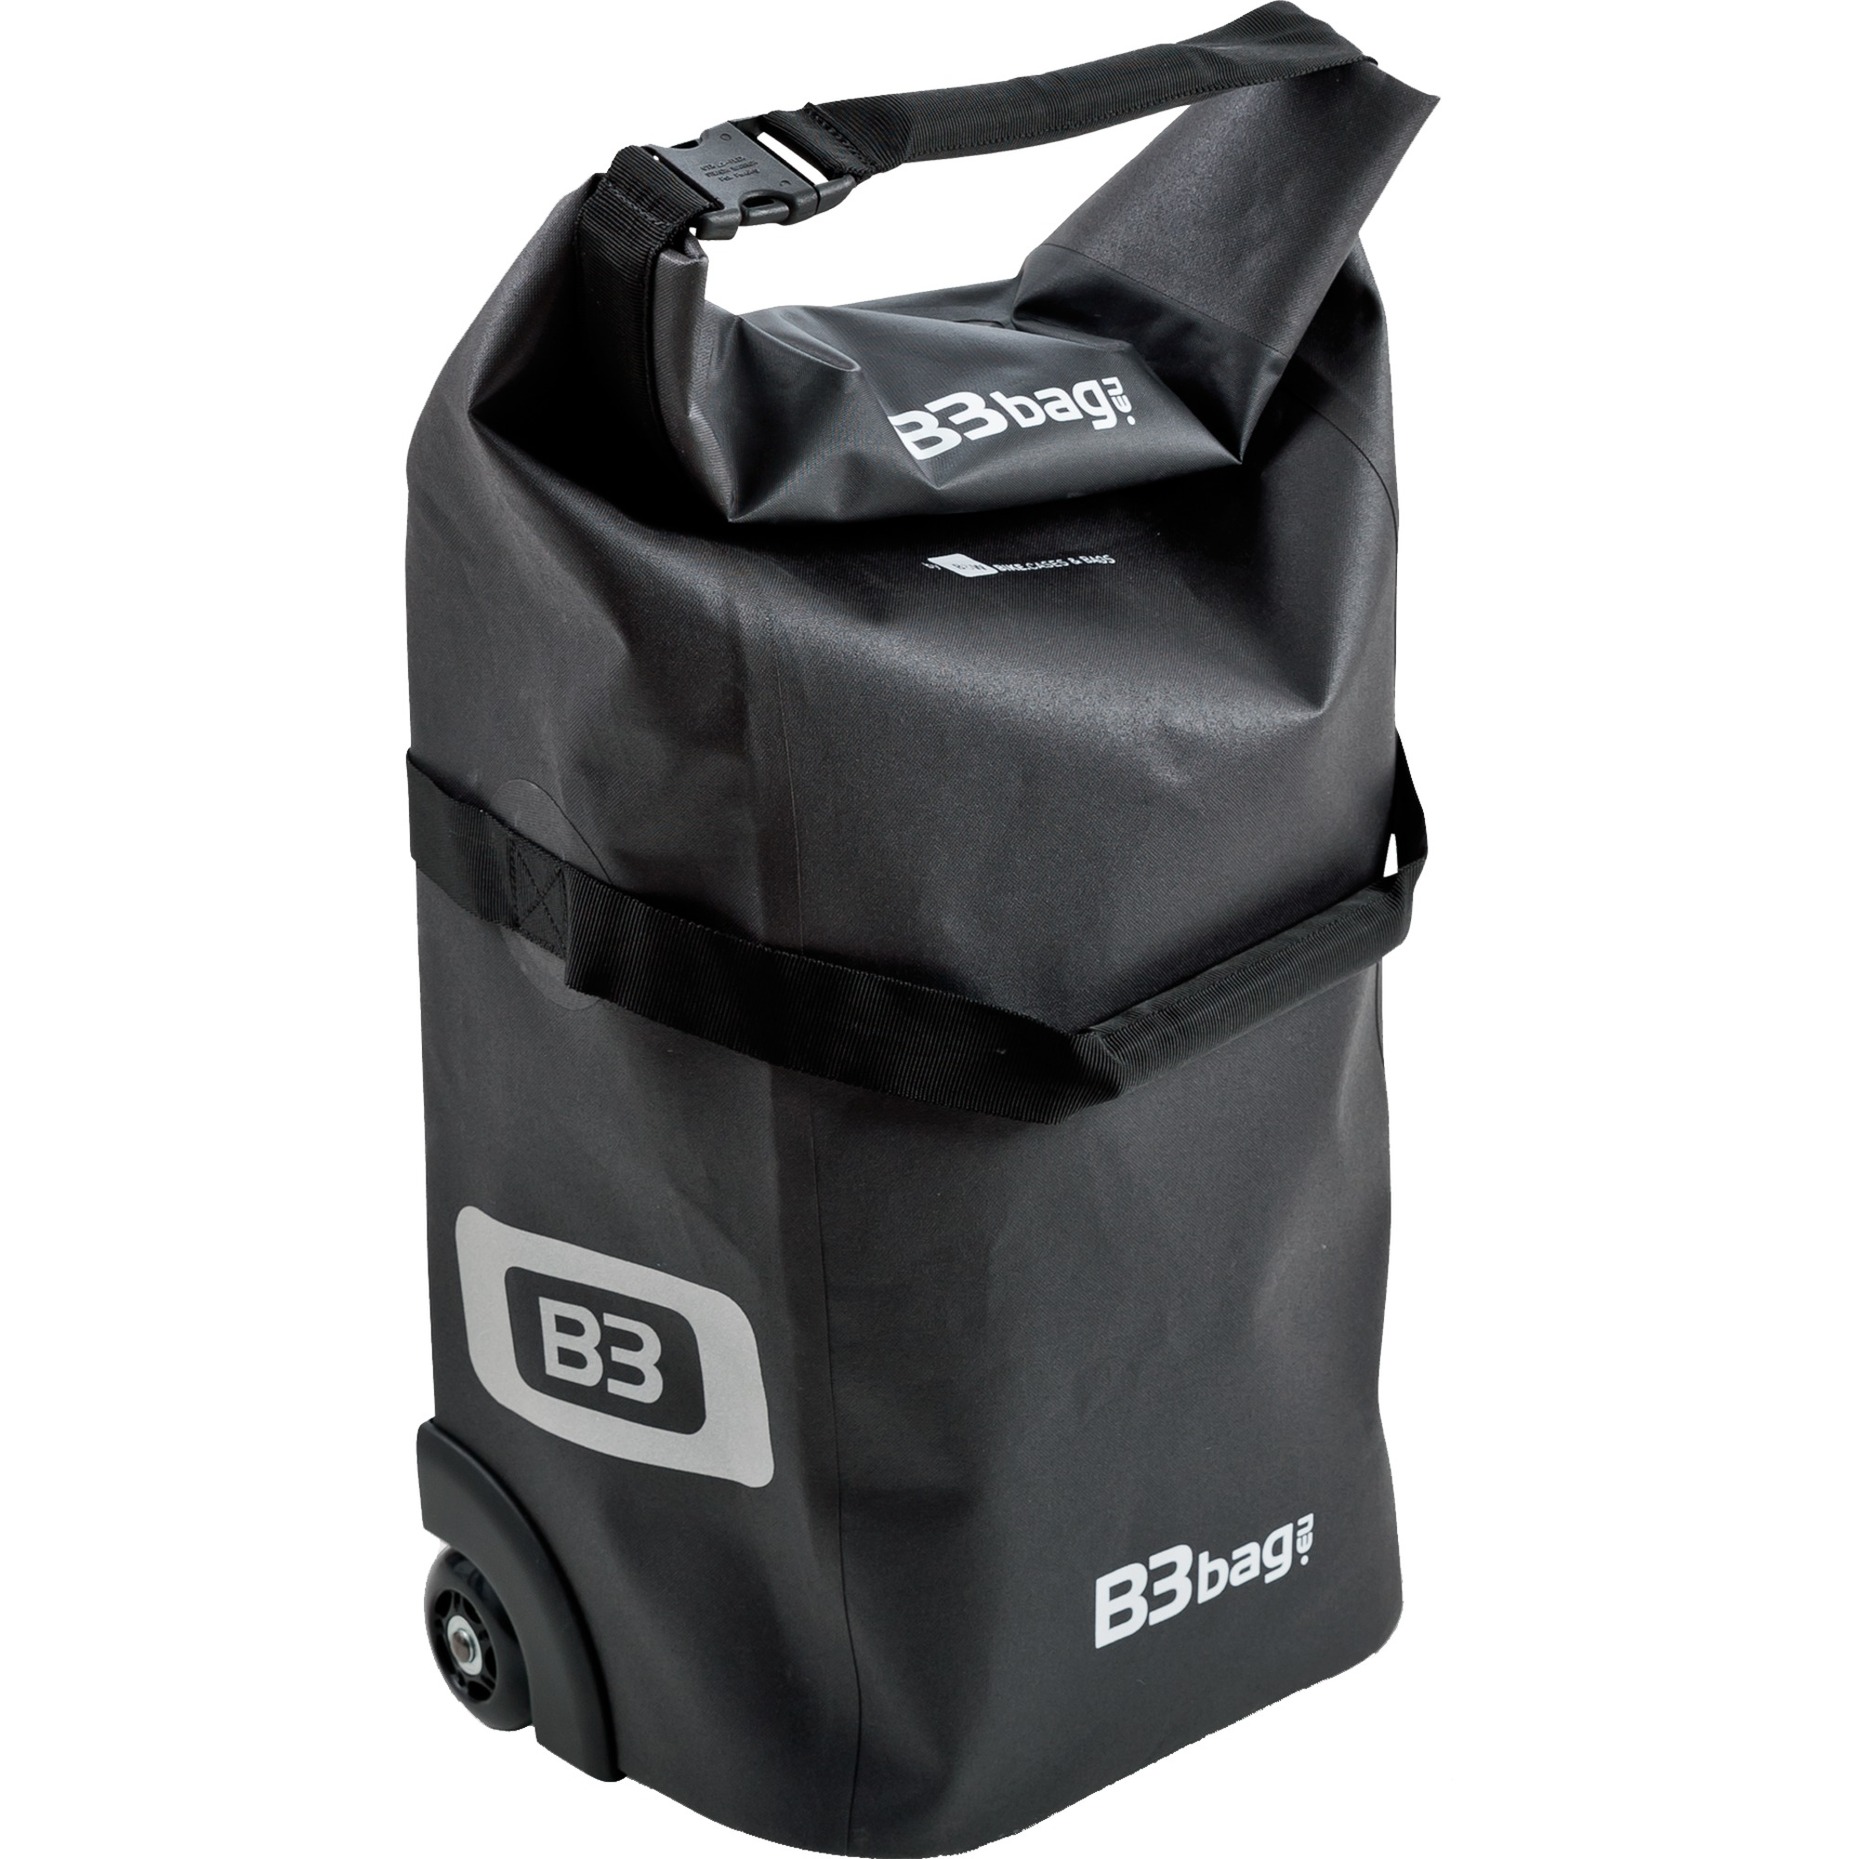 Image of Alternate - B3 bag, Fahrradkorb/-tasche online einkaufen bei Alternate